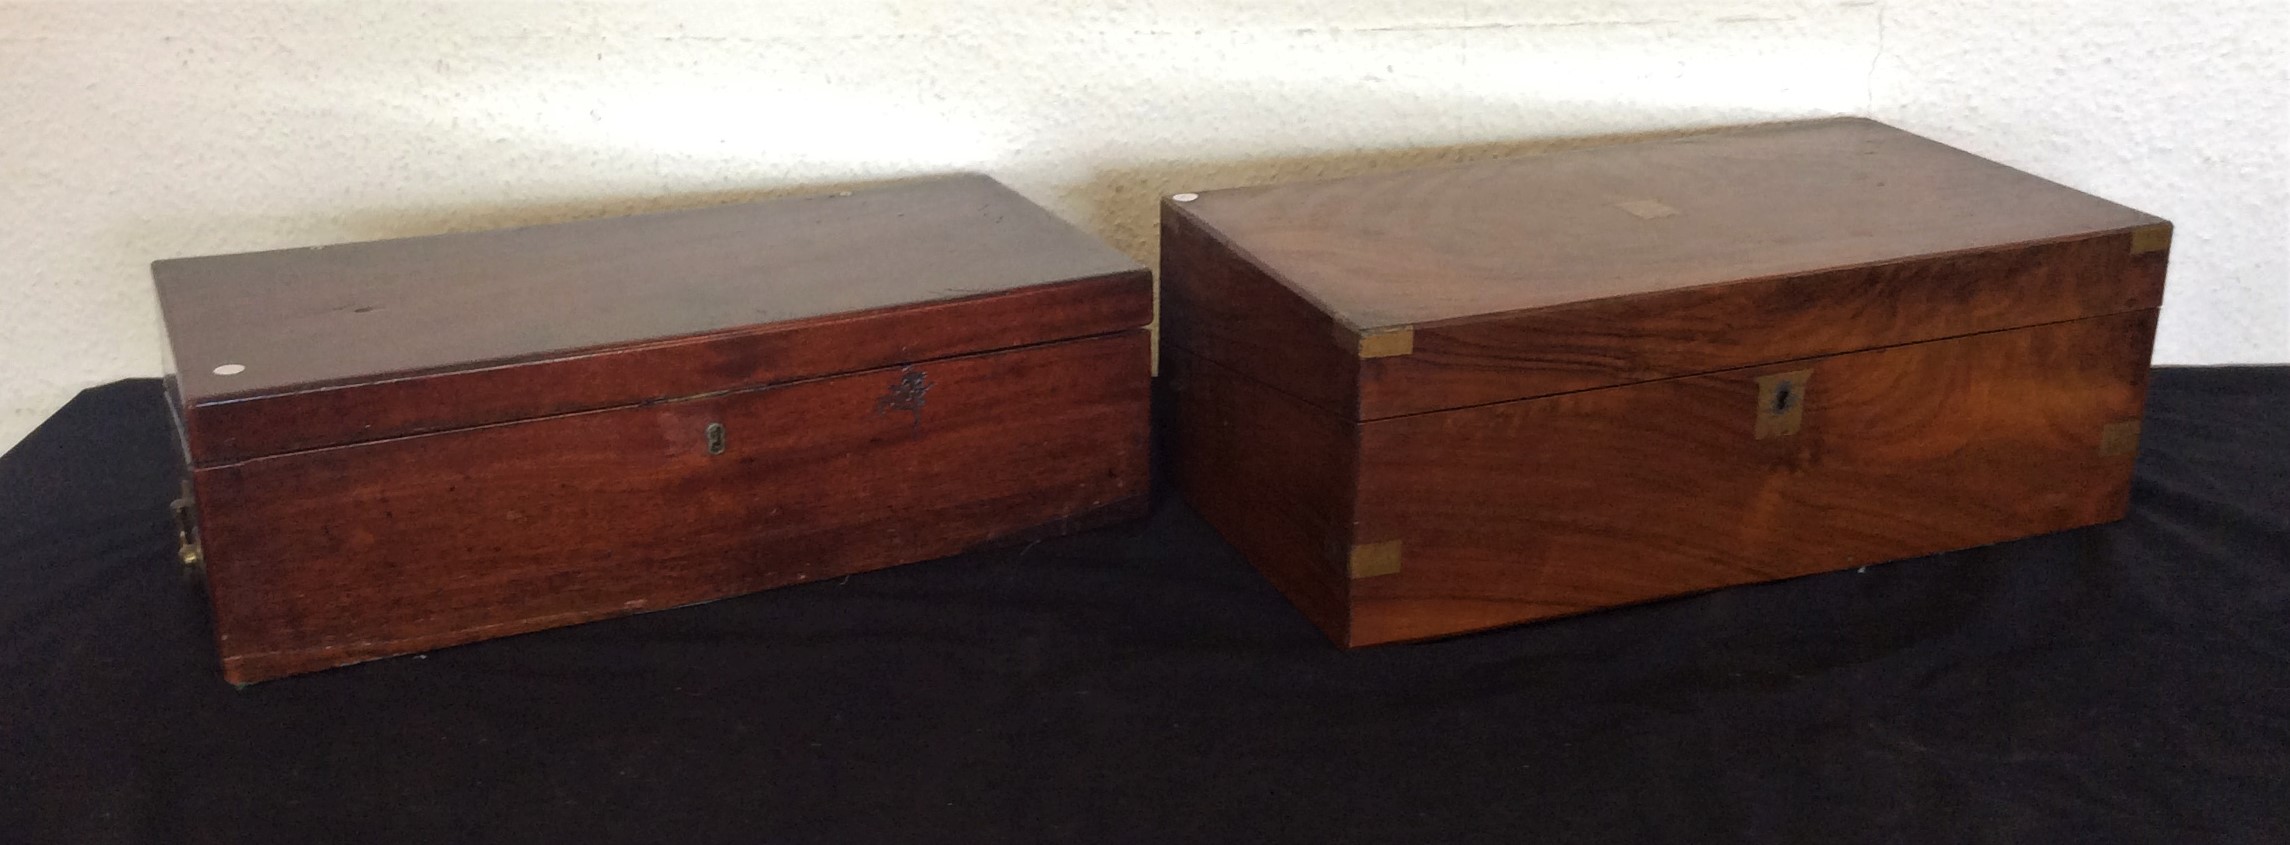 Two Mahogany writing boxes